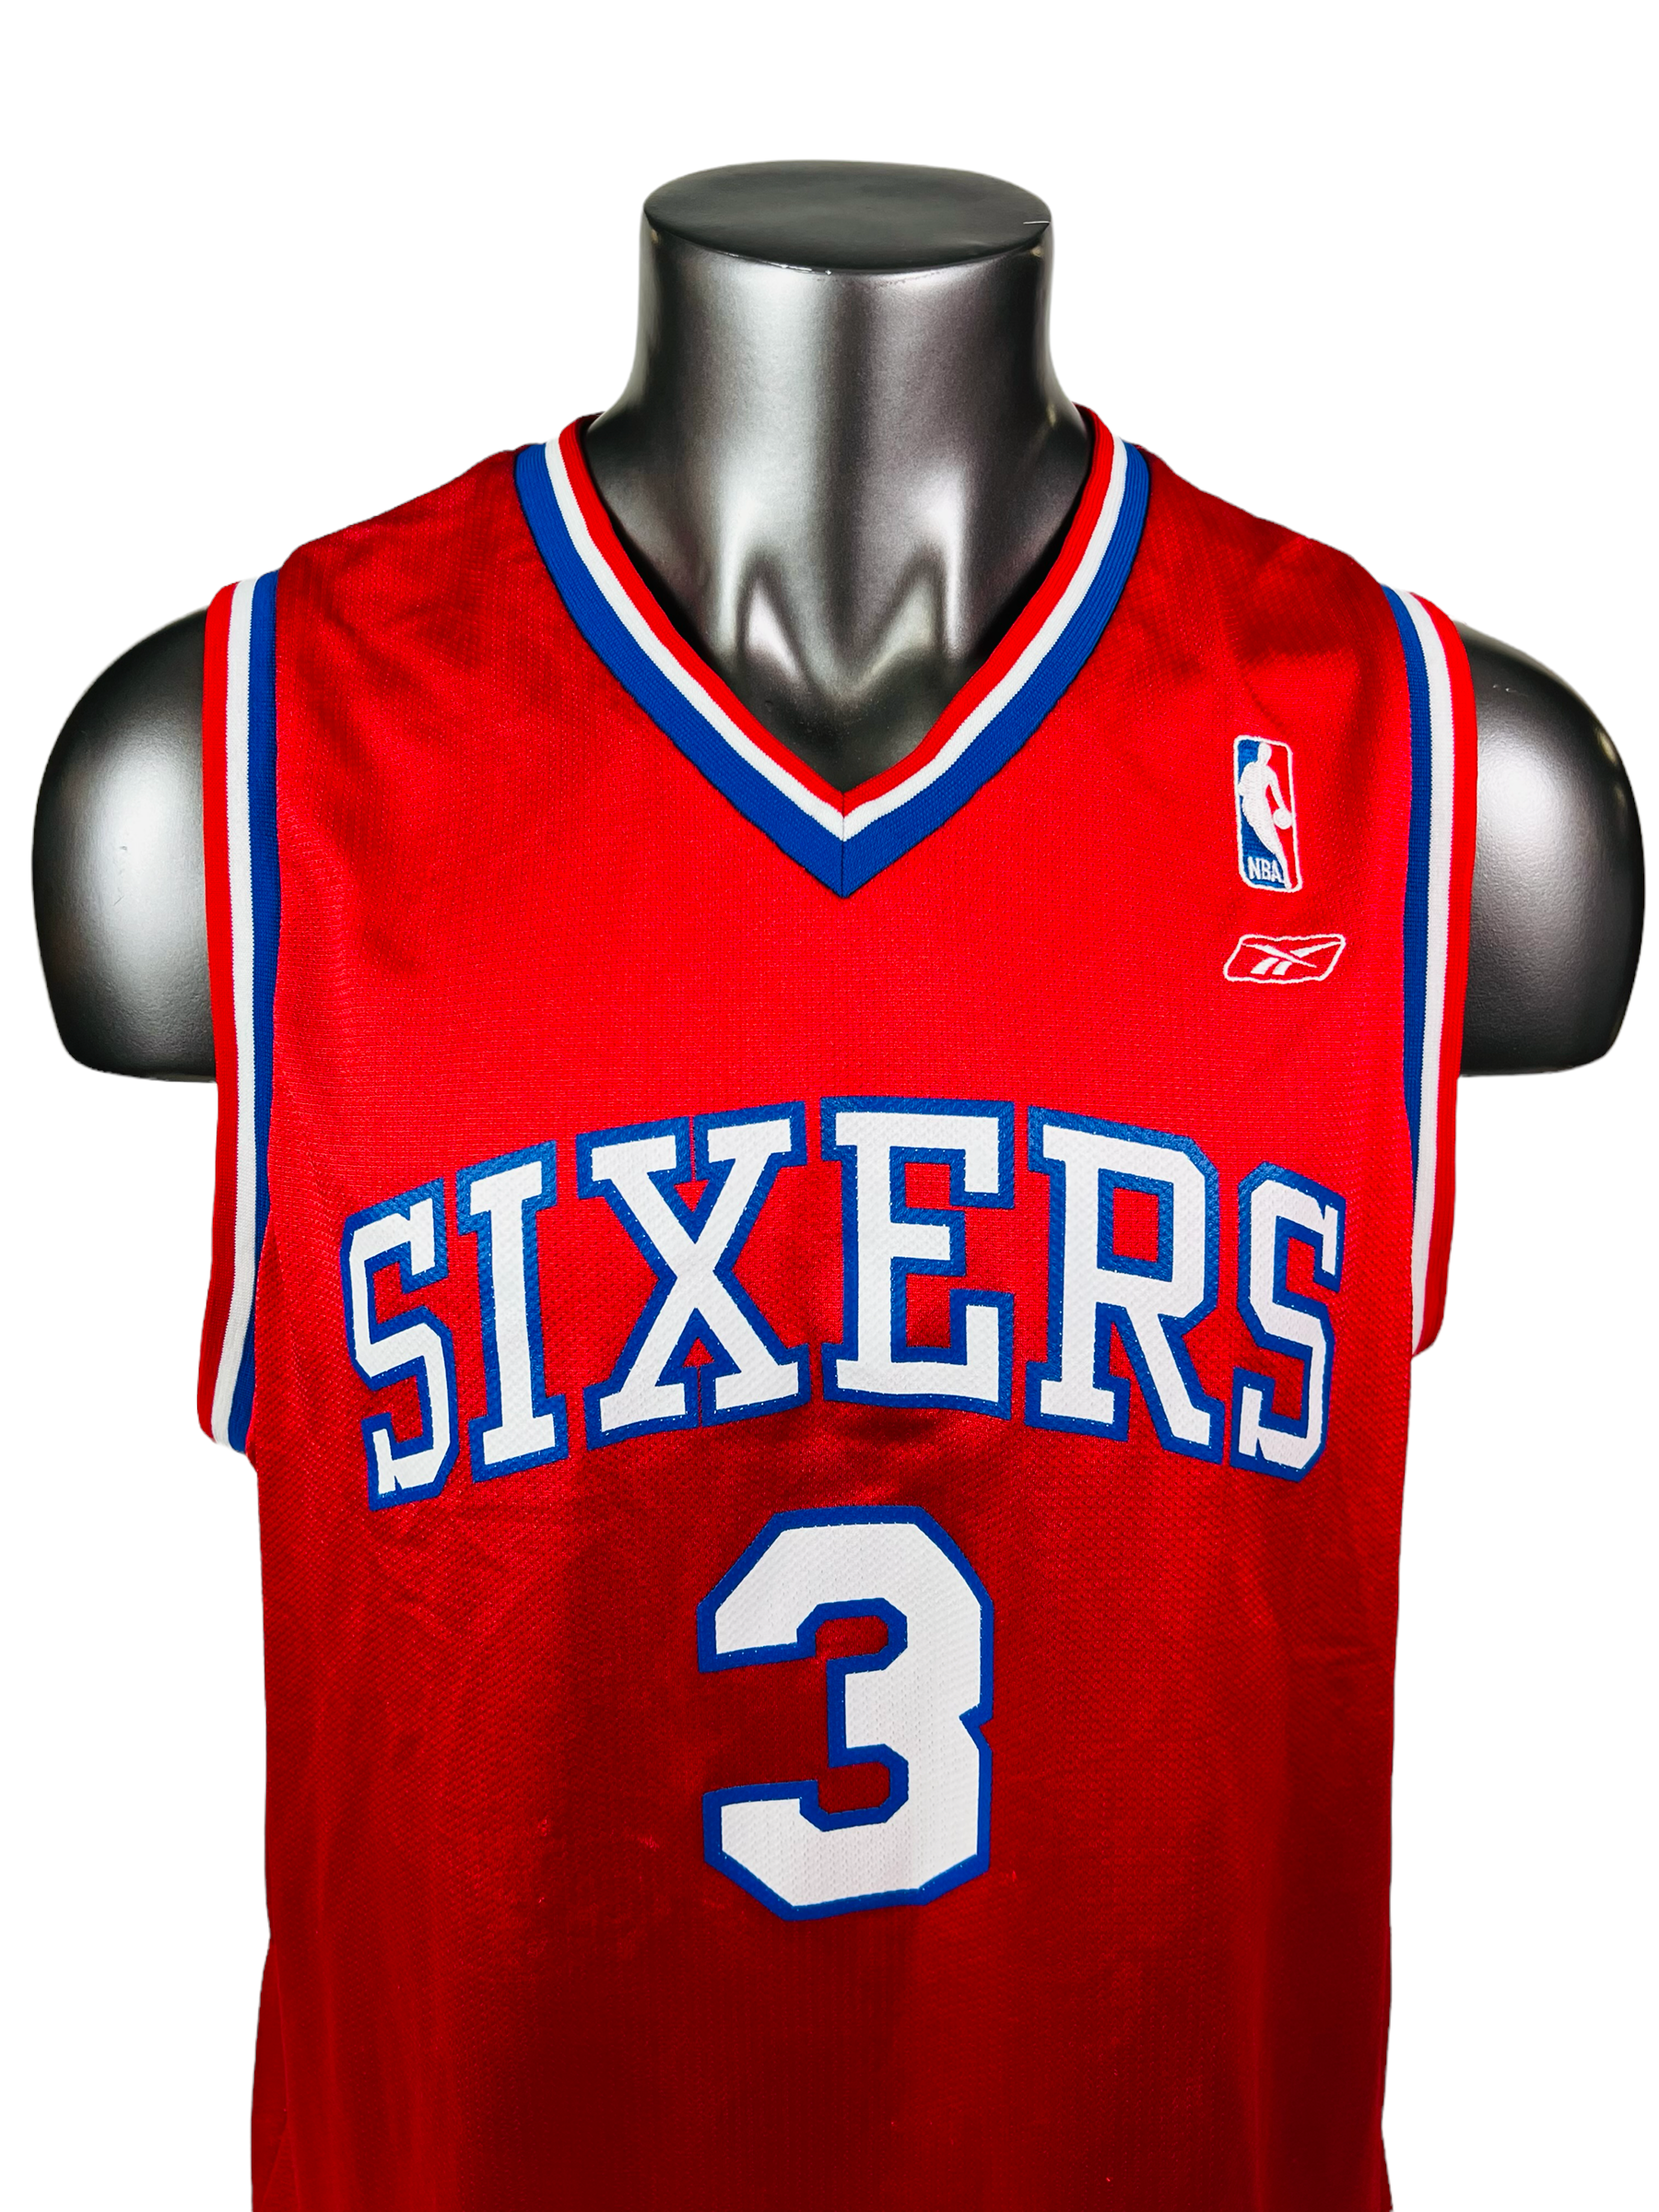 Authentic Vintage Champion NBA Philadelphia 76ers Allen Iverson Jersey